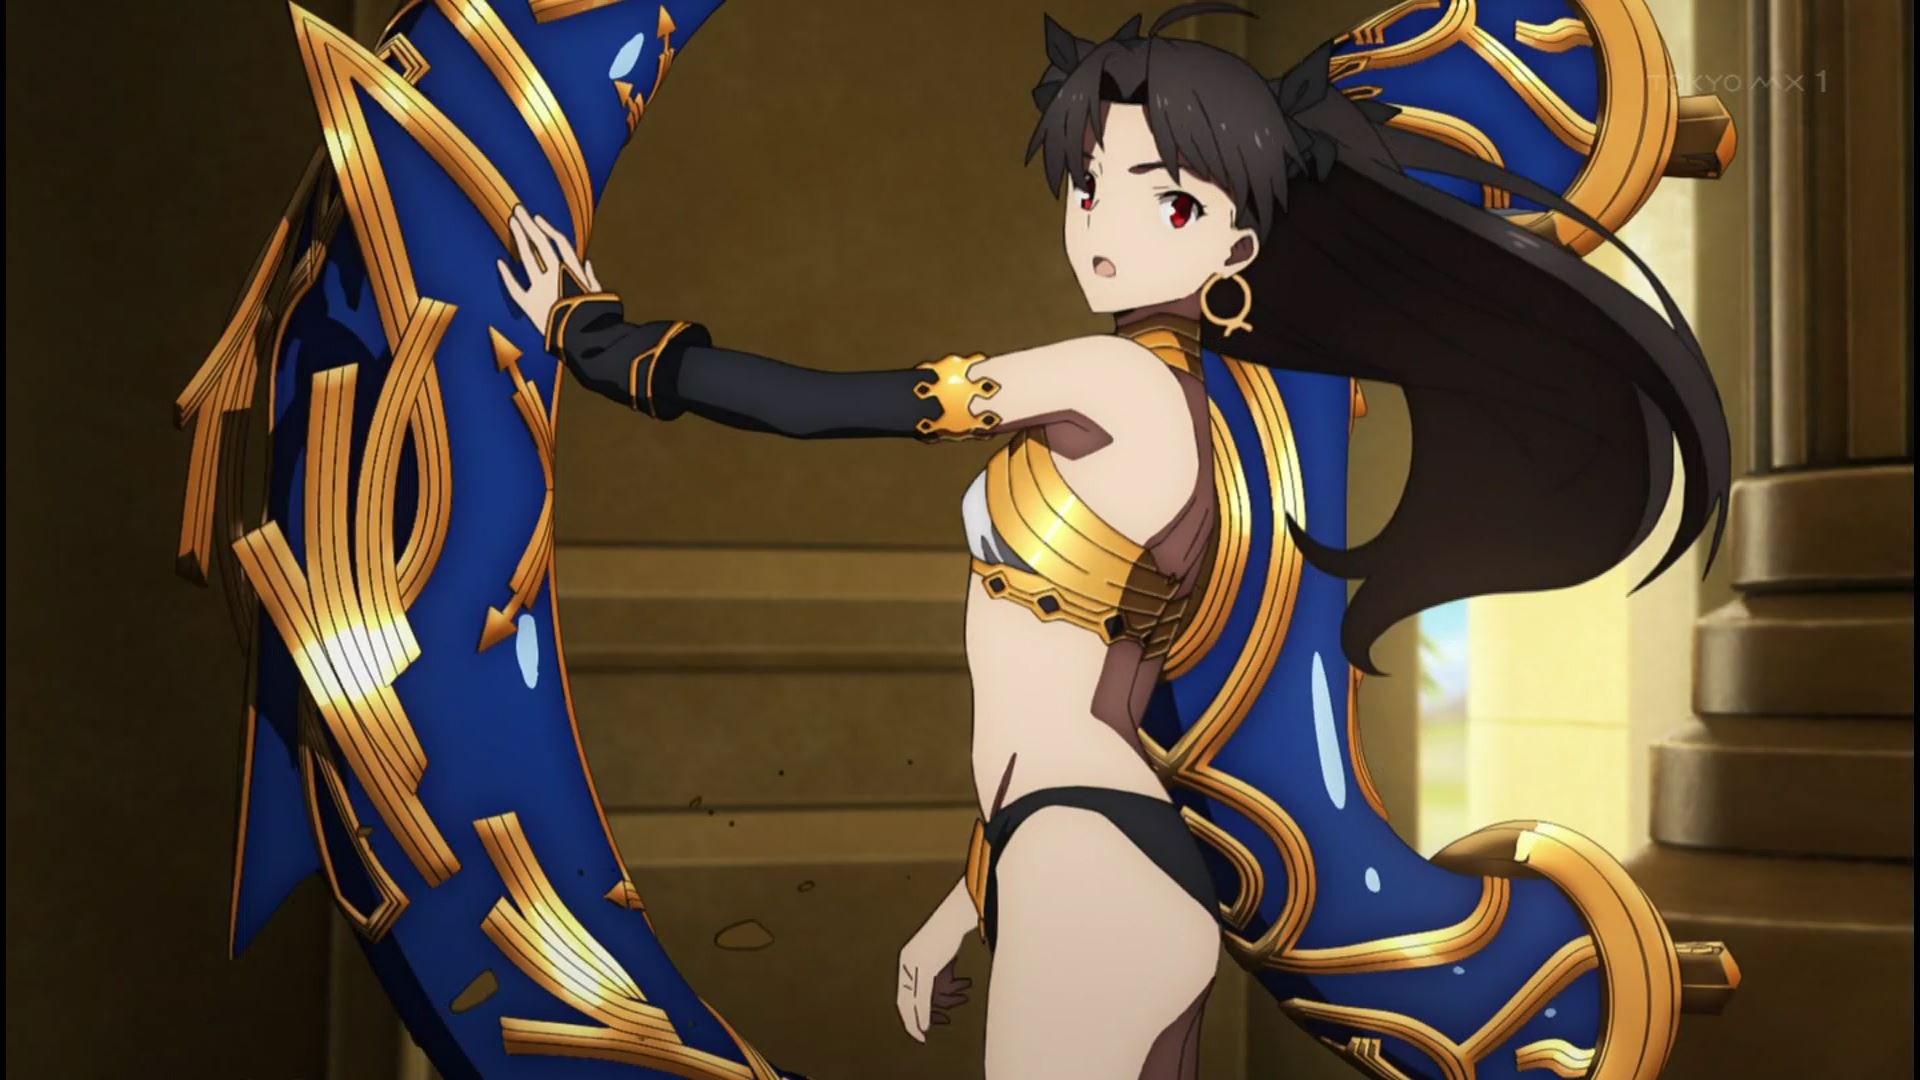 Anime [Fate / Grand Order Babylonia] 3 episodes mash erotic and ushiwakamaru tits! 11